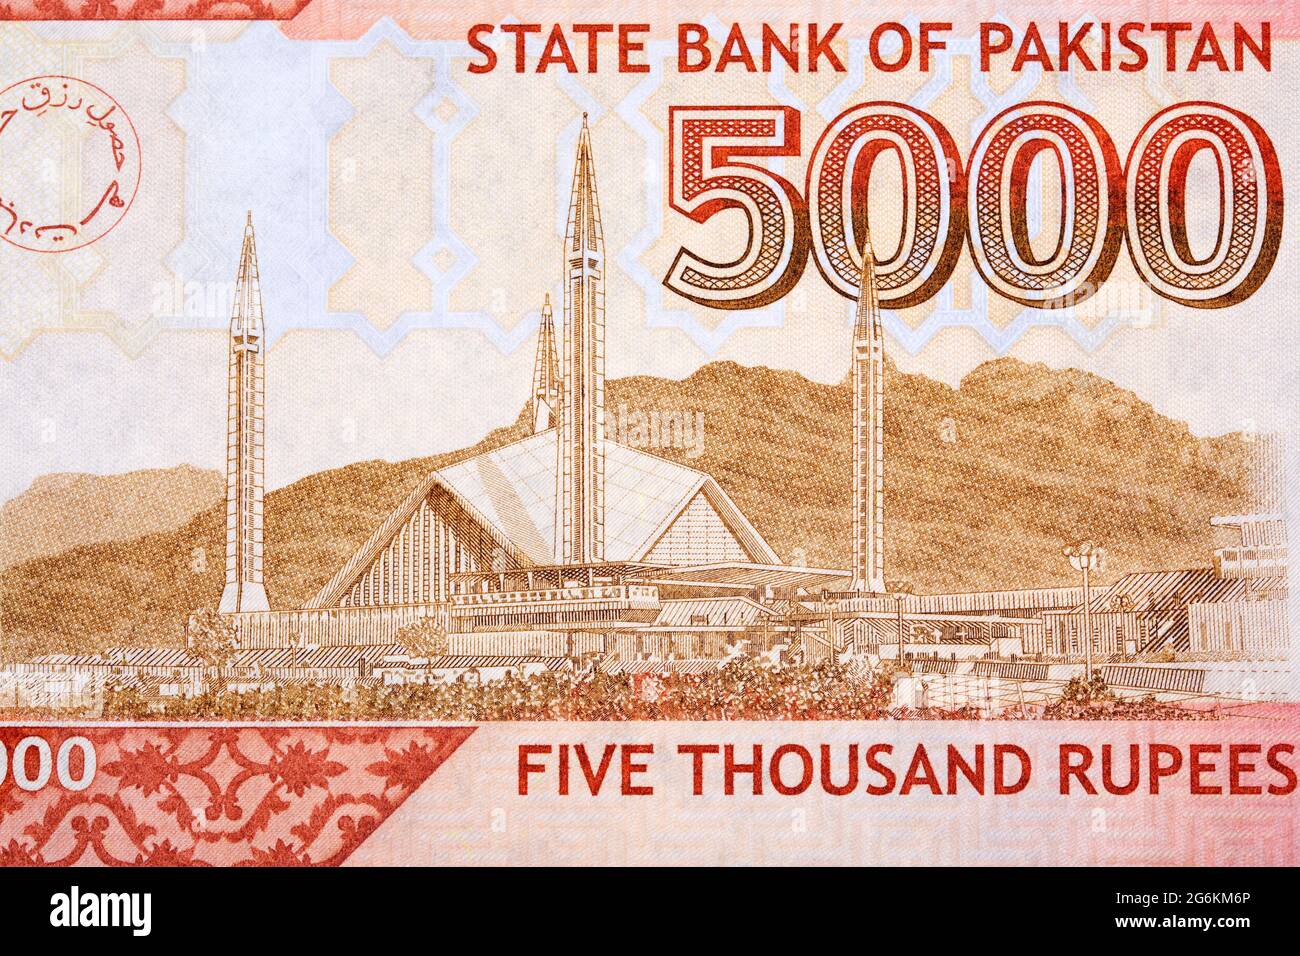 Fayisal Masjid à Islamabad de l'argent pakistanais Banque D'Images